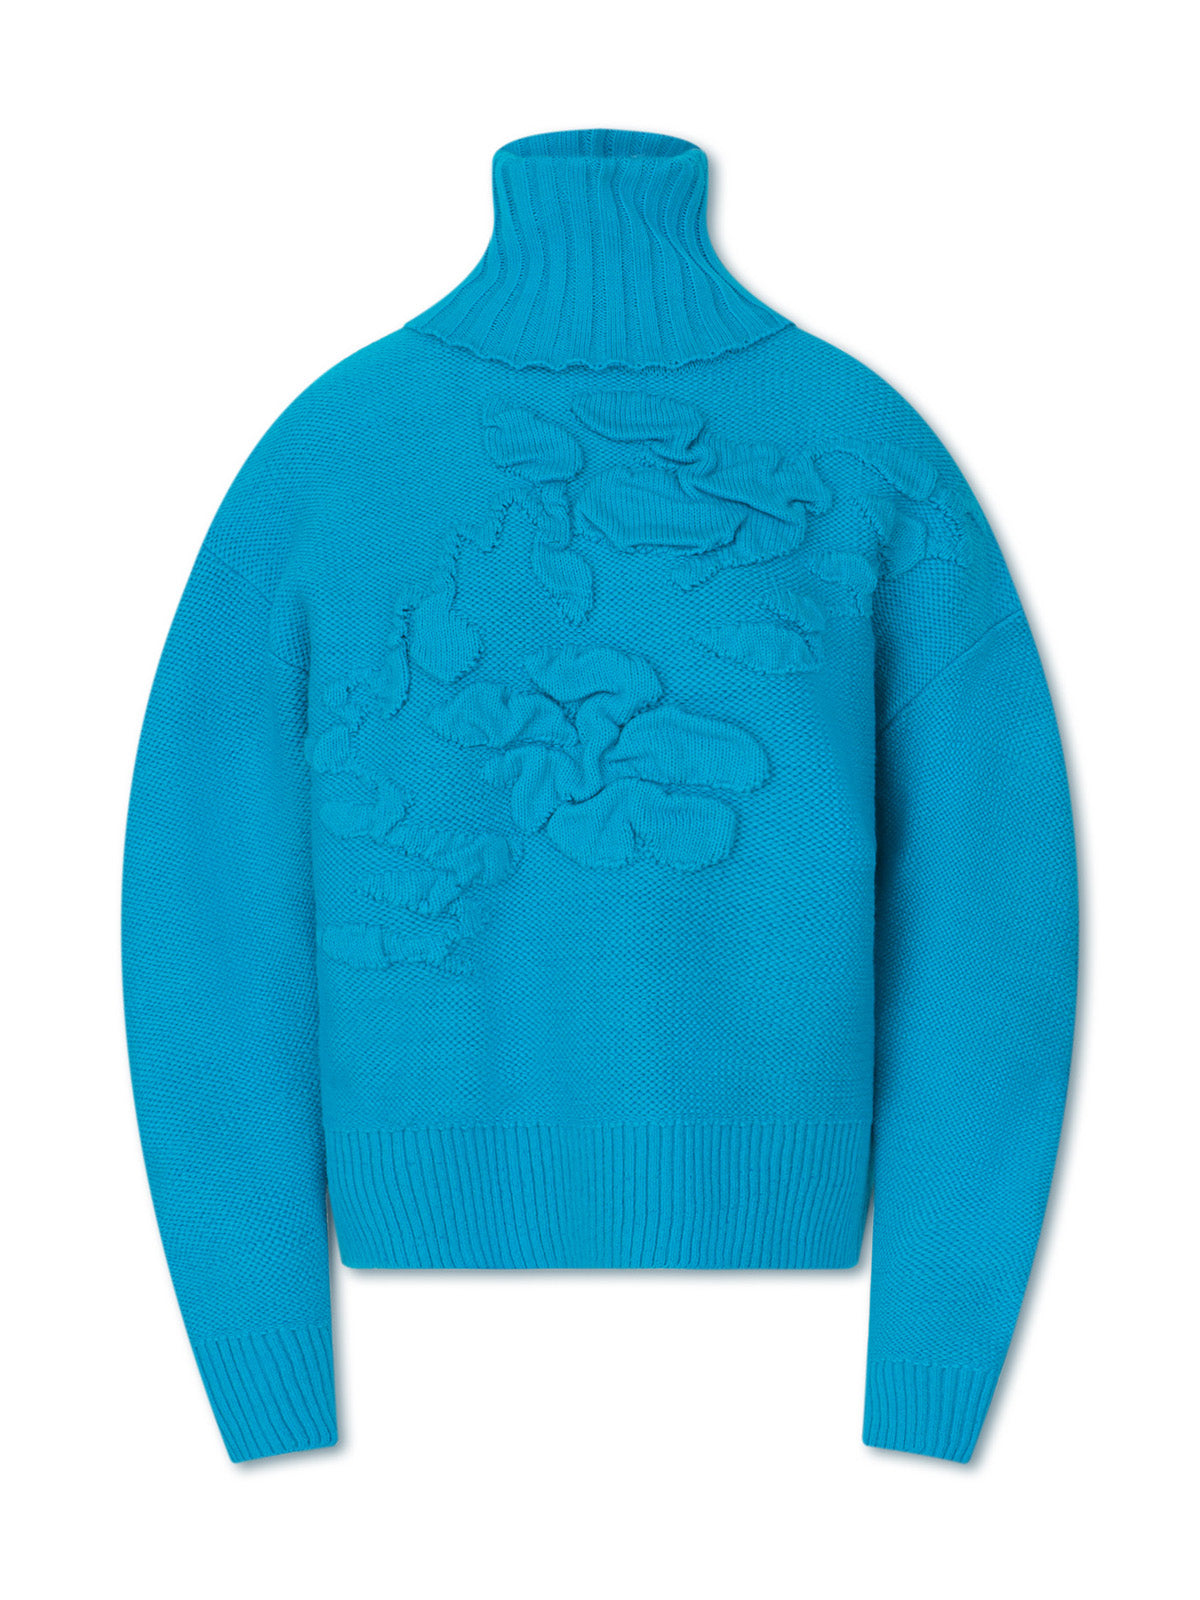 XENON knit sweater - aqua